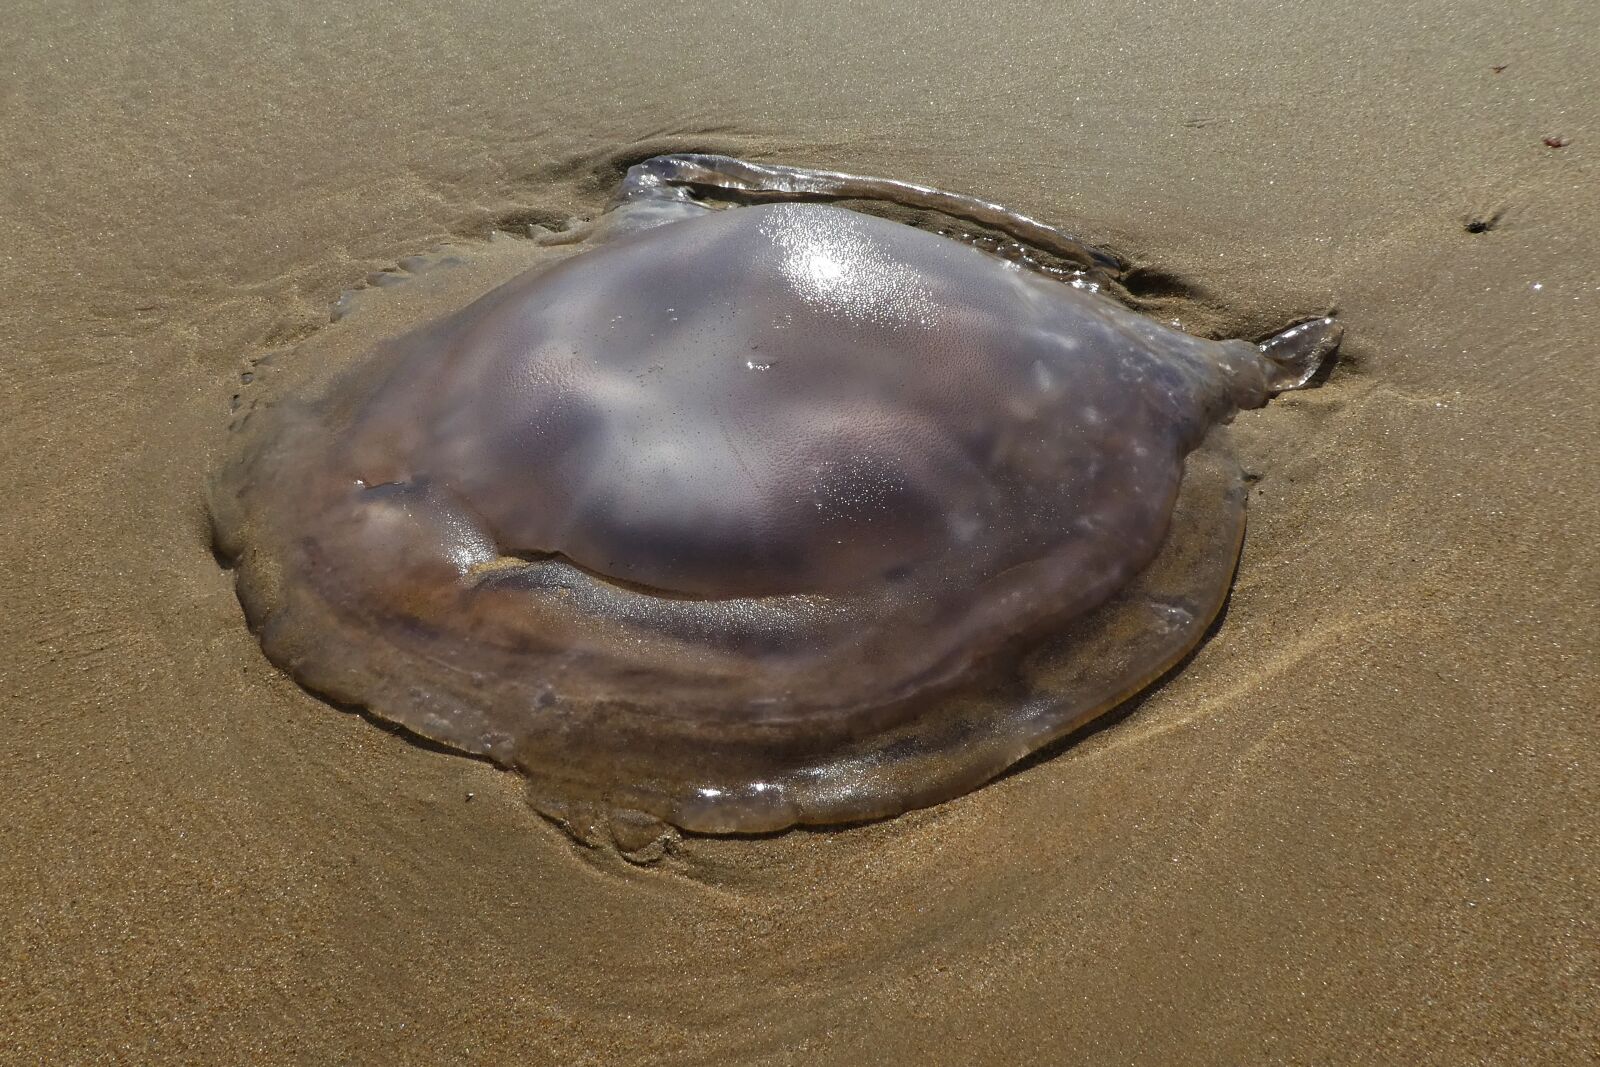 Sony SLT-A68 sample photo. Jellyfish on the beach photography